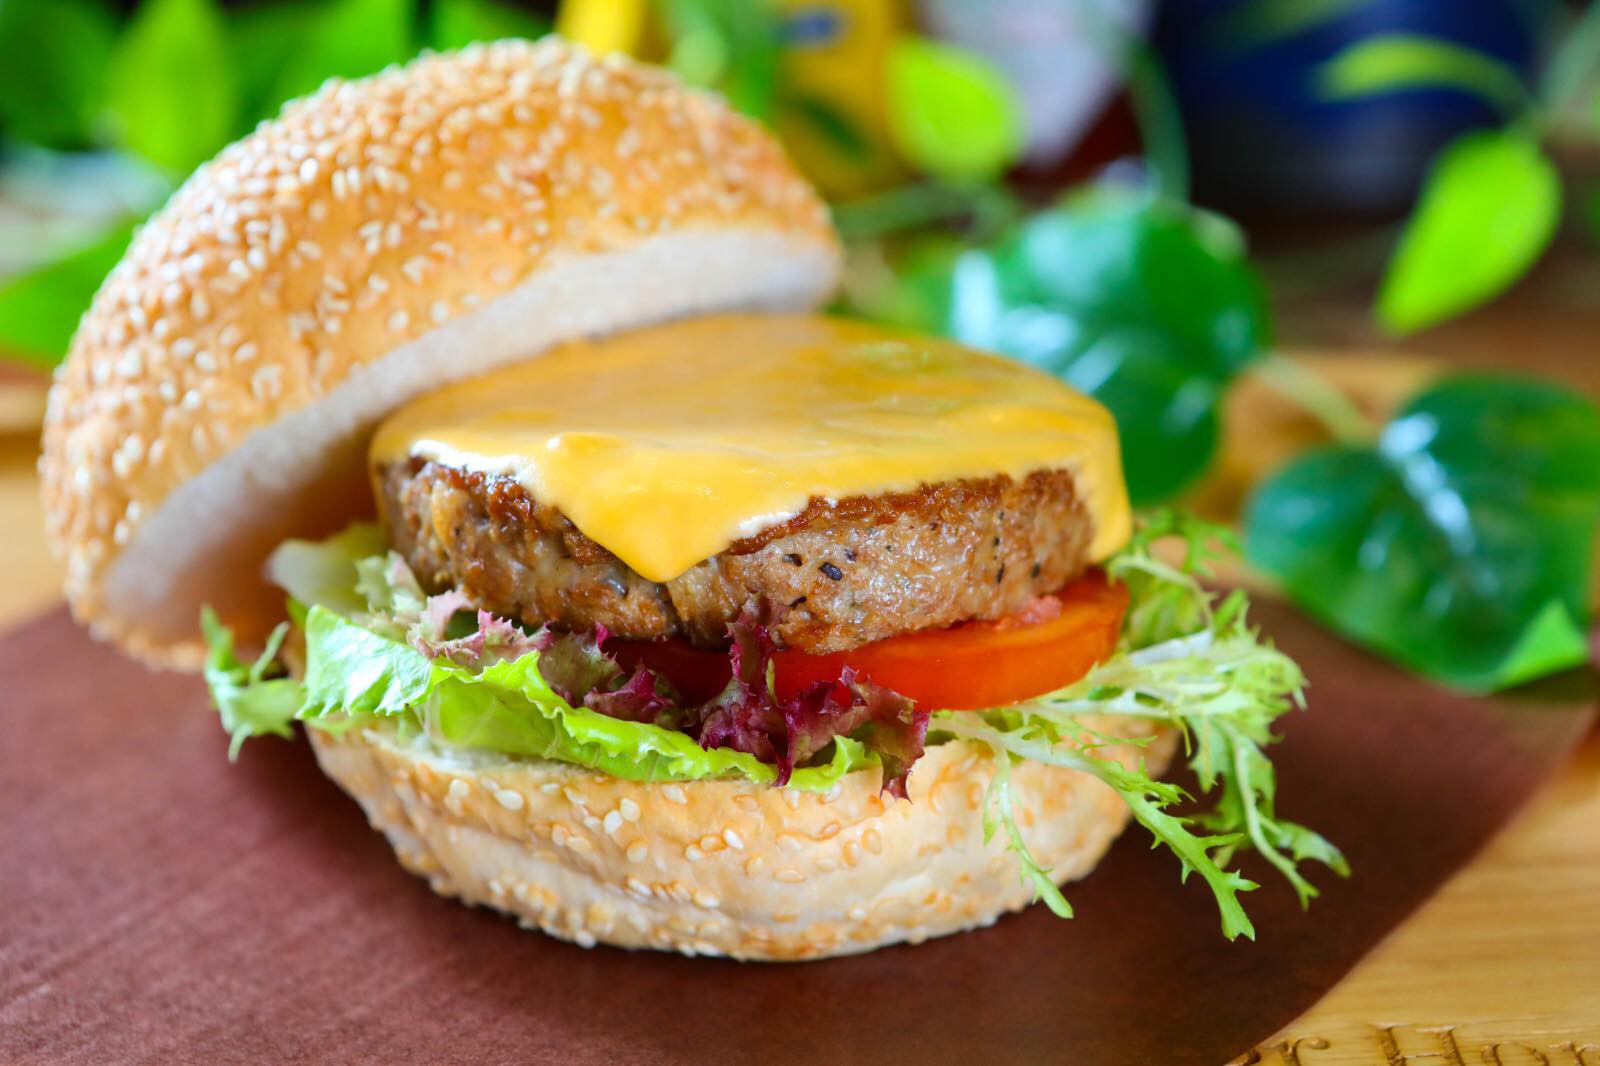 灣仔 街坊名物 平民漢堡店 Burger Home 漢堡 香港品牌 良心小店 芝士素素牛肉漢堡